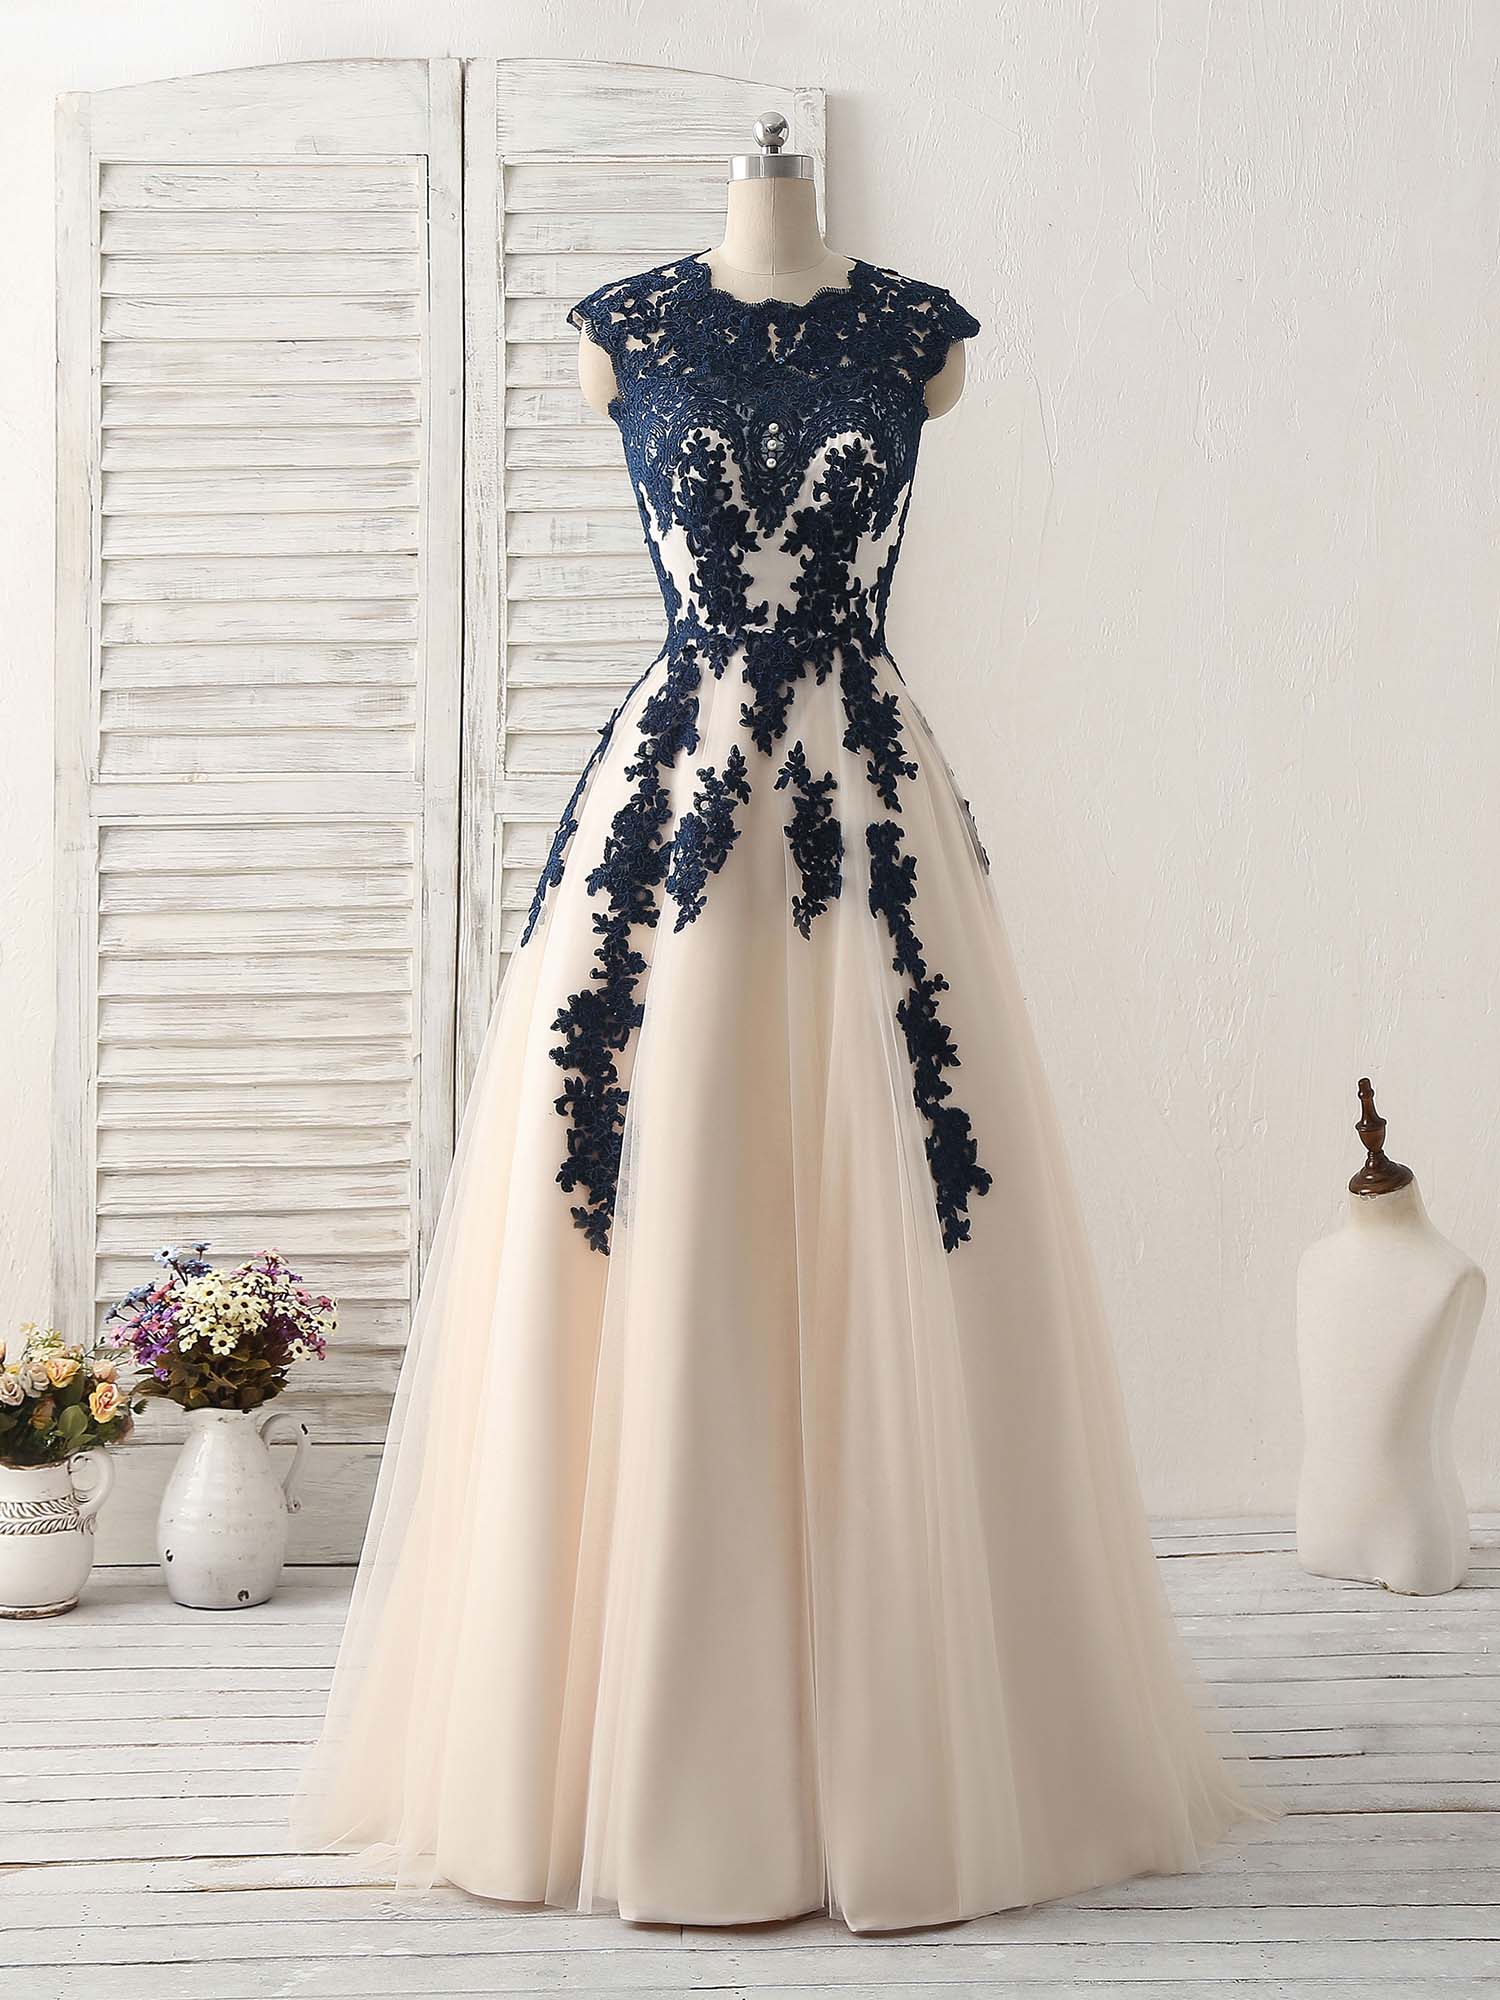 dark blue and white dress